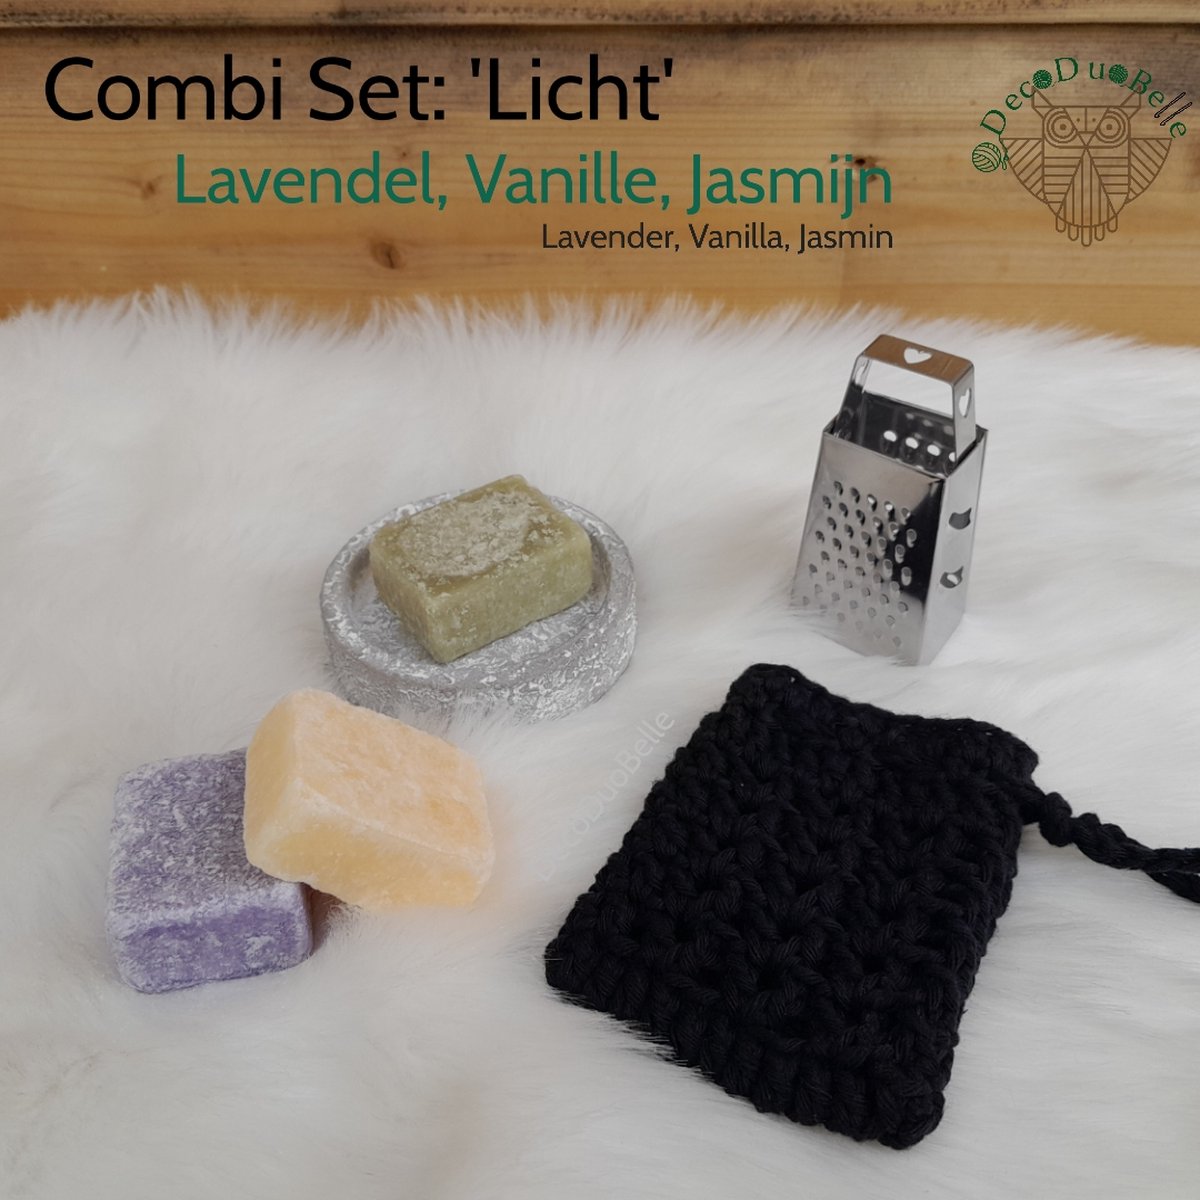 3 Amberblokjes CombiSet 'Licht': Set Geurblokjes: Vanille, Jasmijn, Lavendel met Schaaltje, Rasp en Gehaakt Geurzakje - Cadeauset